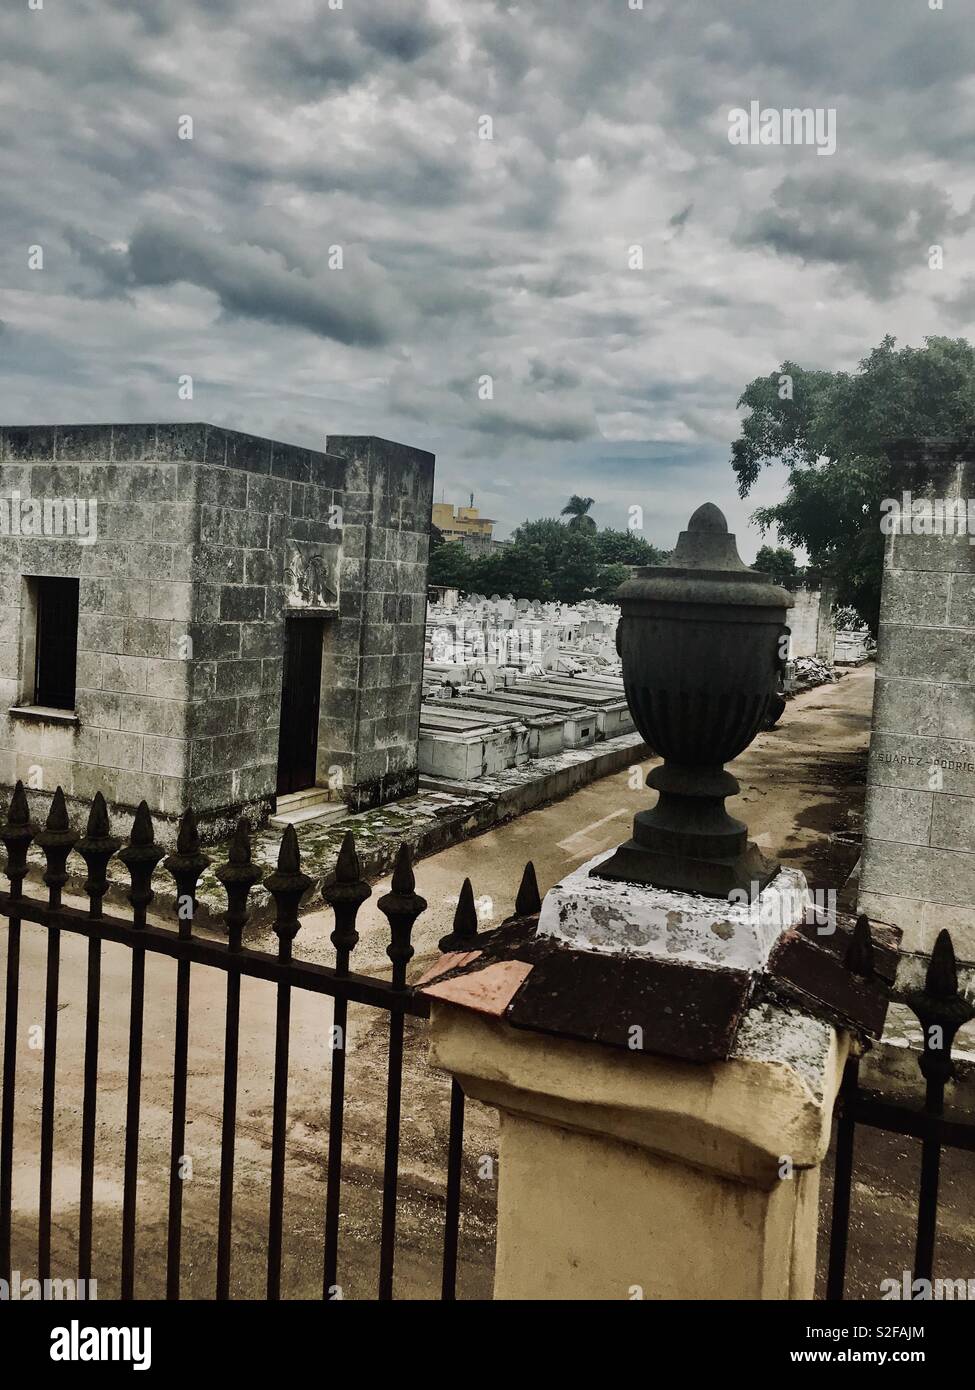 Cimitero di Colon è uno dei più importanti cimiteri in tutto il mondo ed è uno dei più importanti in America Latina nella storica e architettura, Colon è cimitero cattolico. Foto Stock